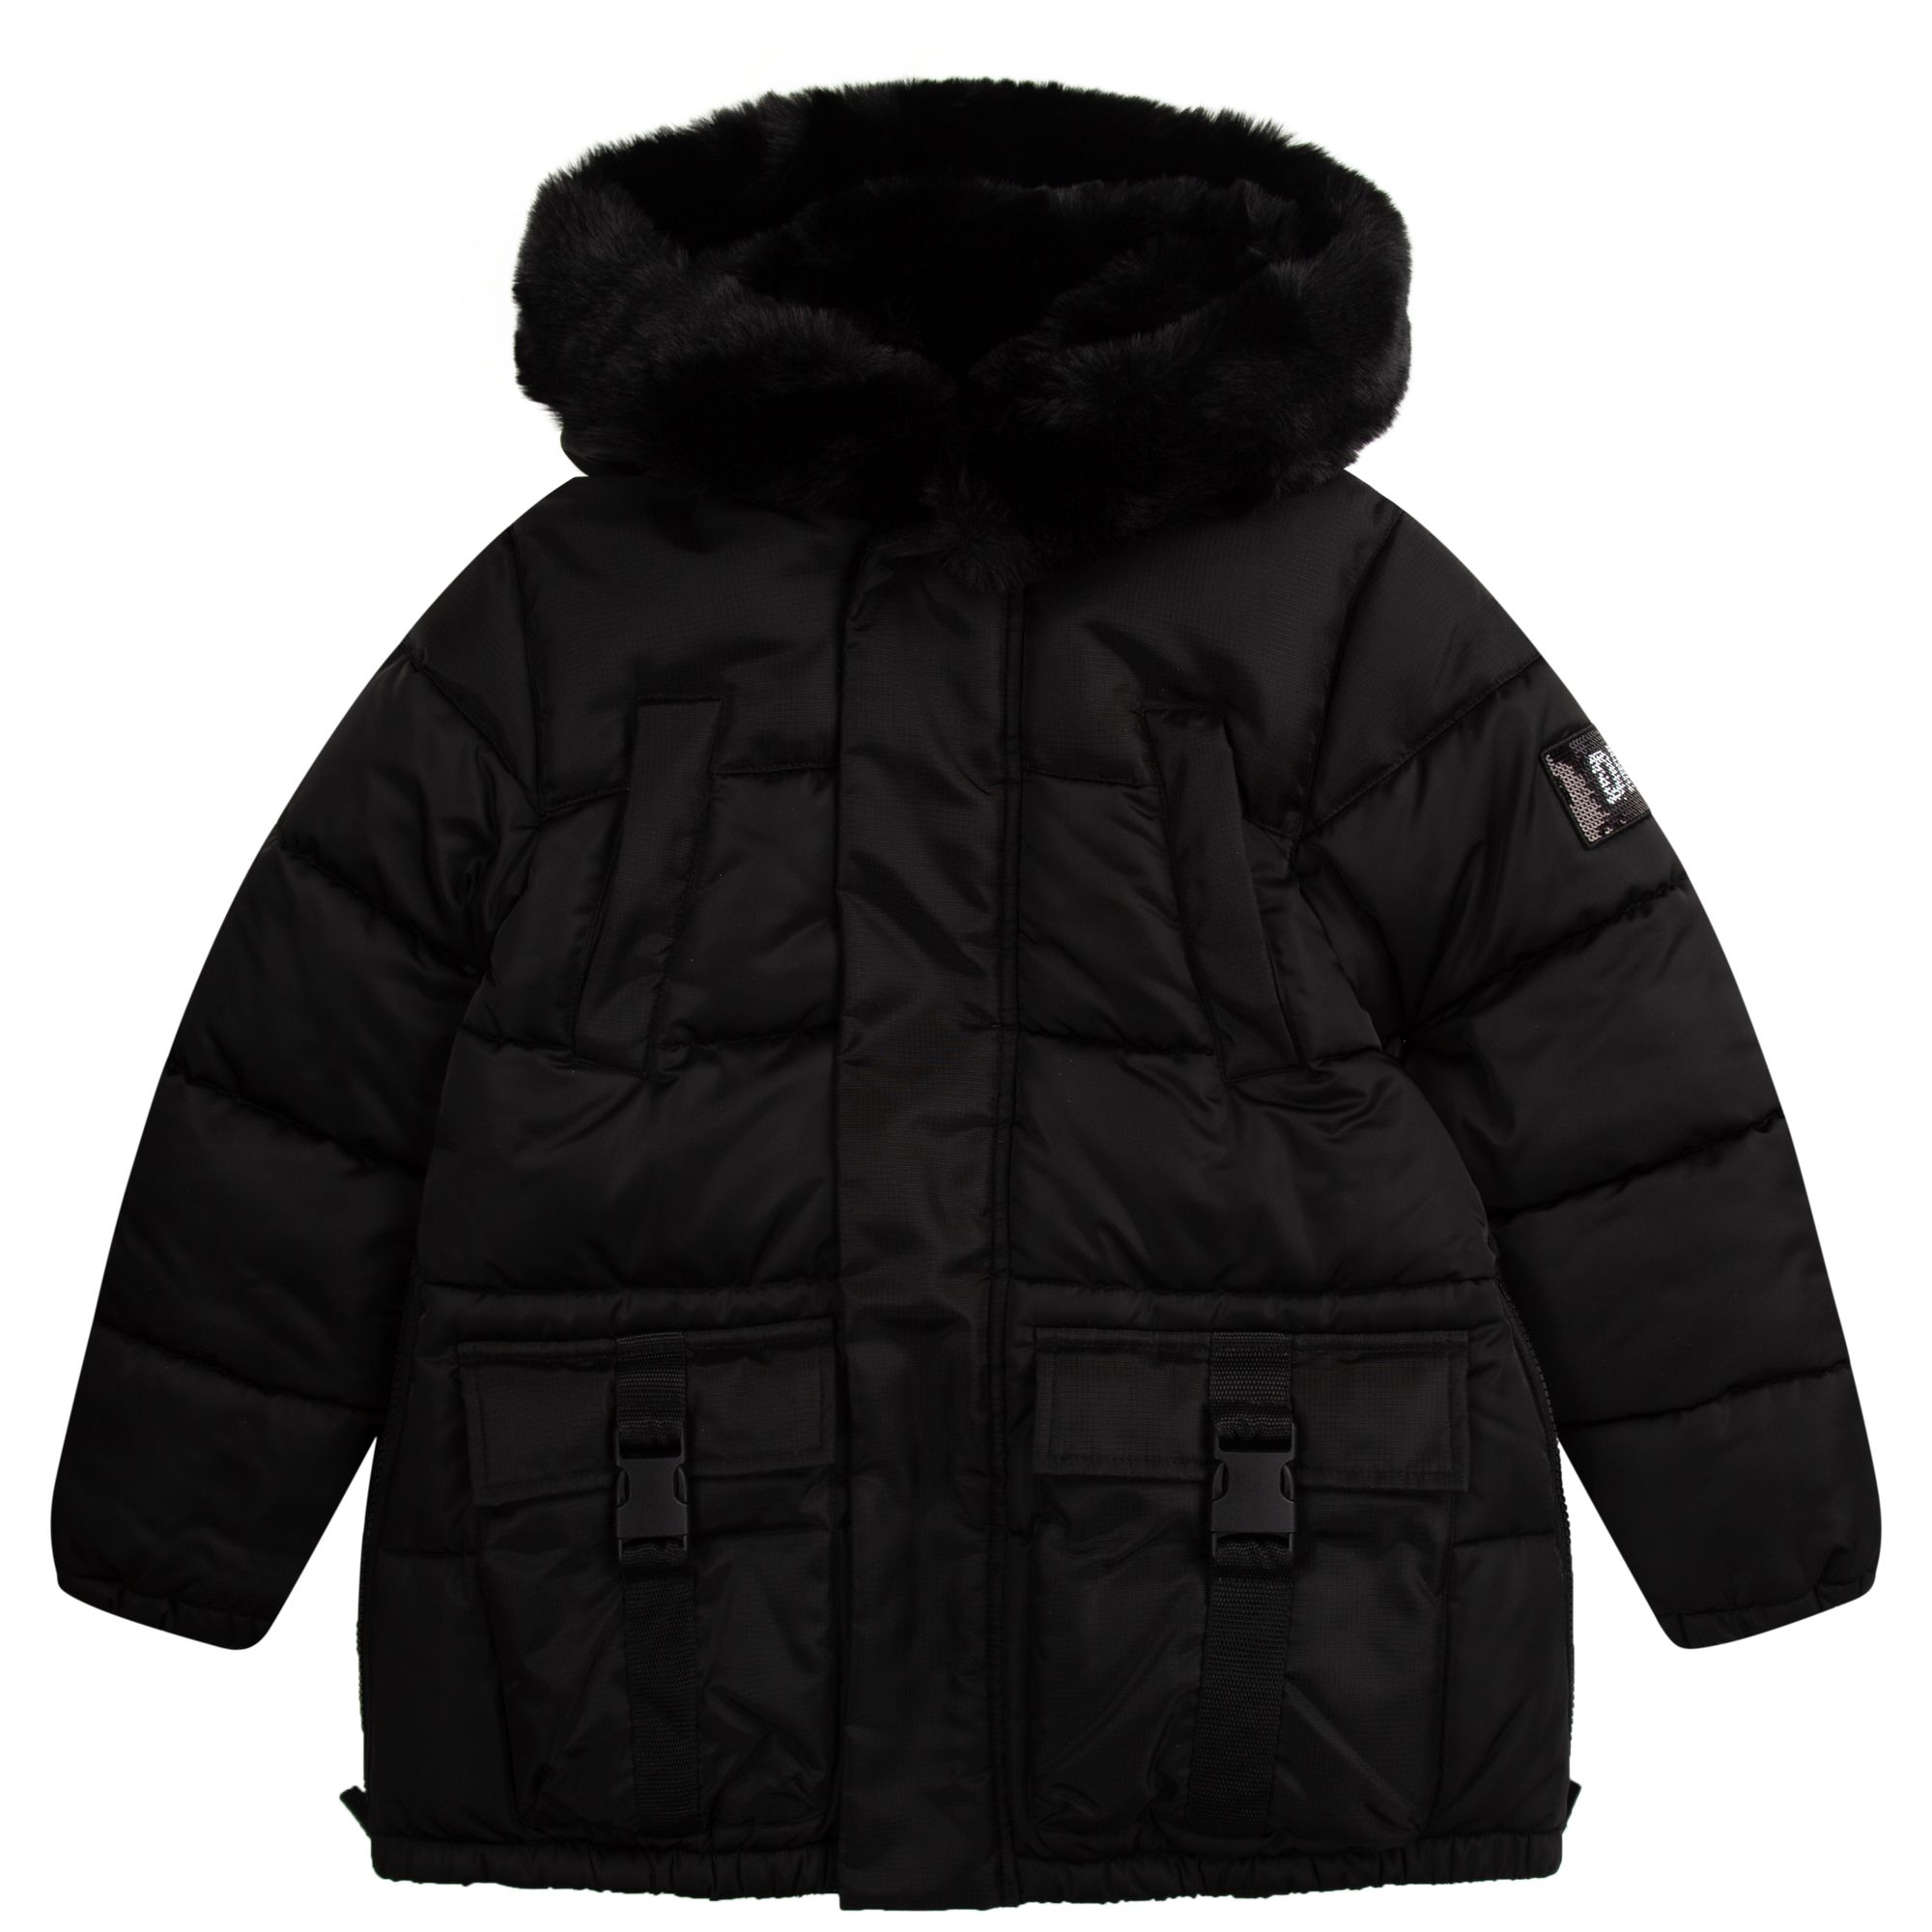 DKNY Black Jacket D36669 - Little Angels Childrenswear